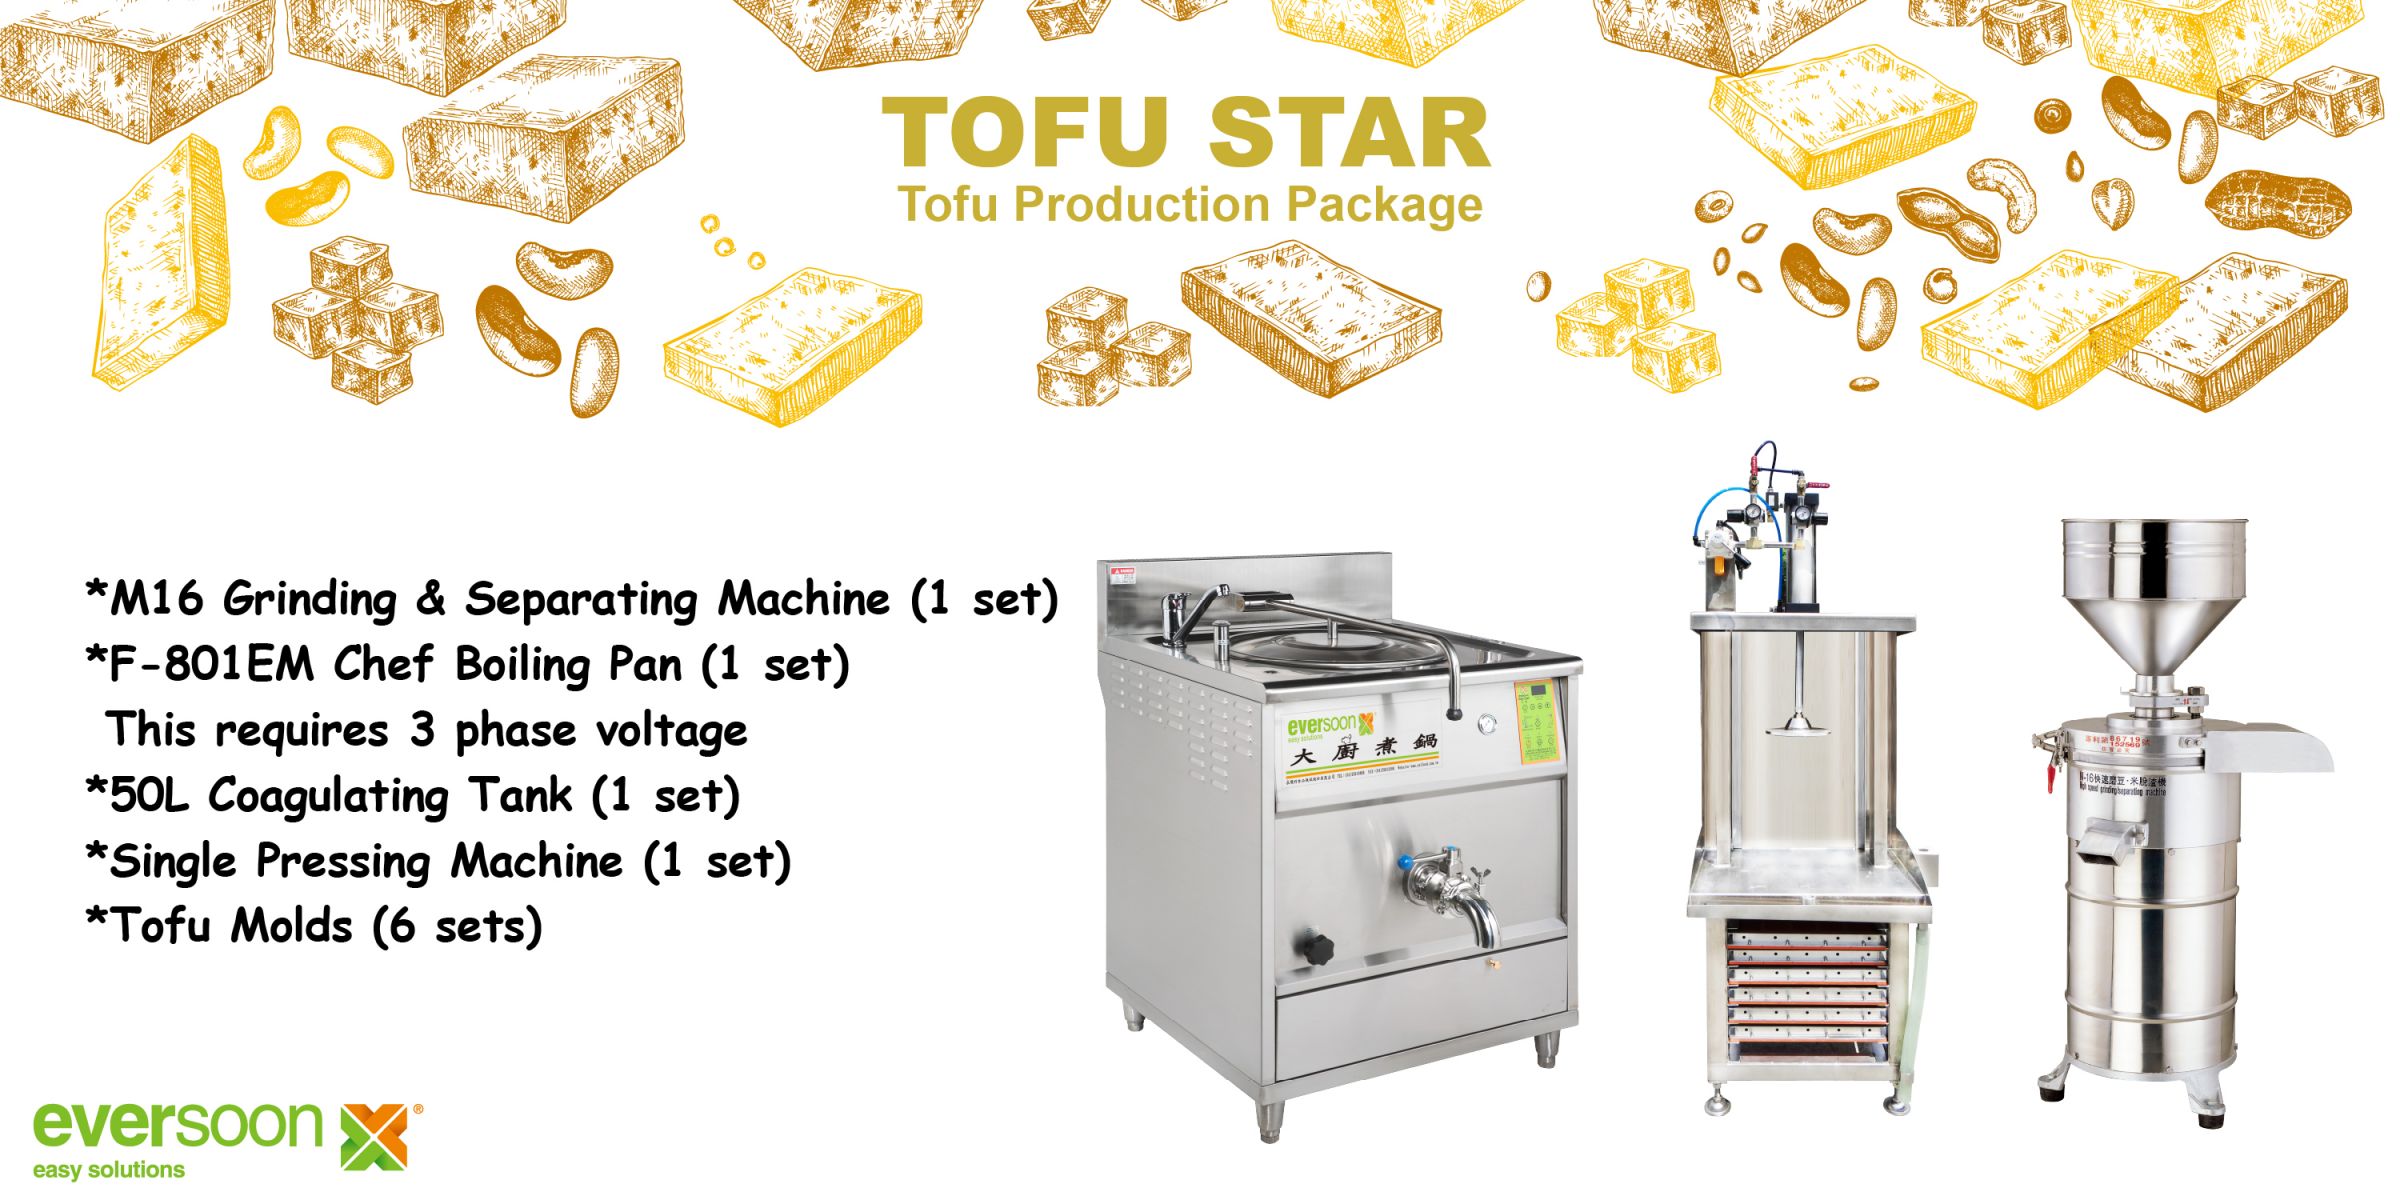 Anledningen till varför Yung Soon Lih designar Tofu Star